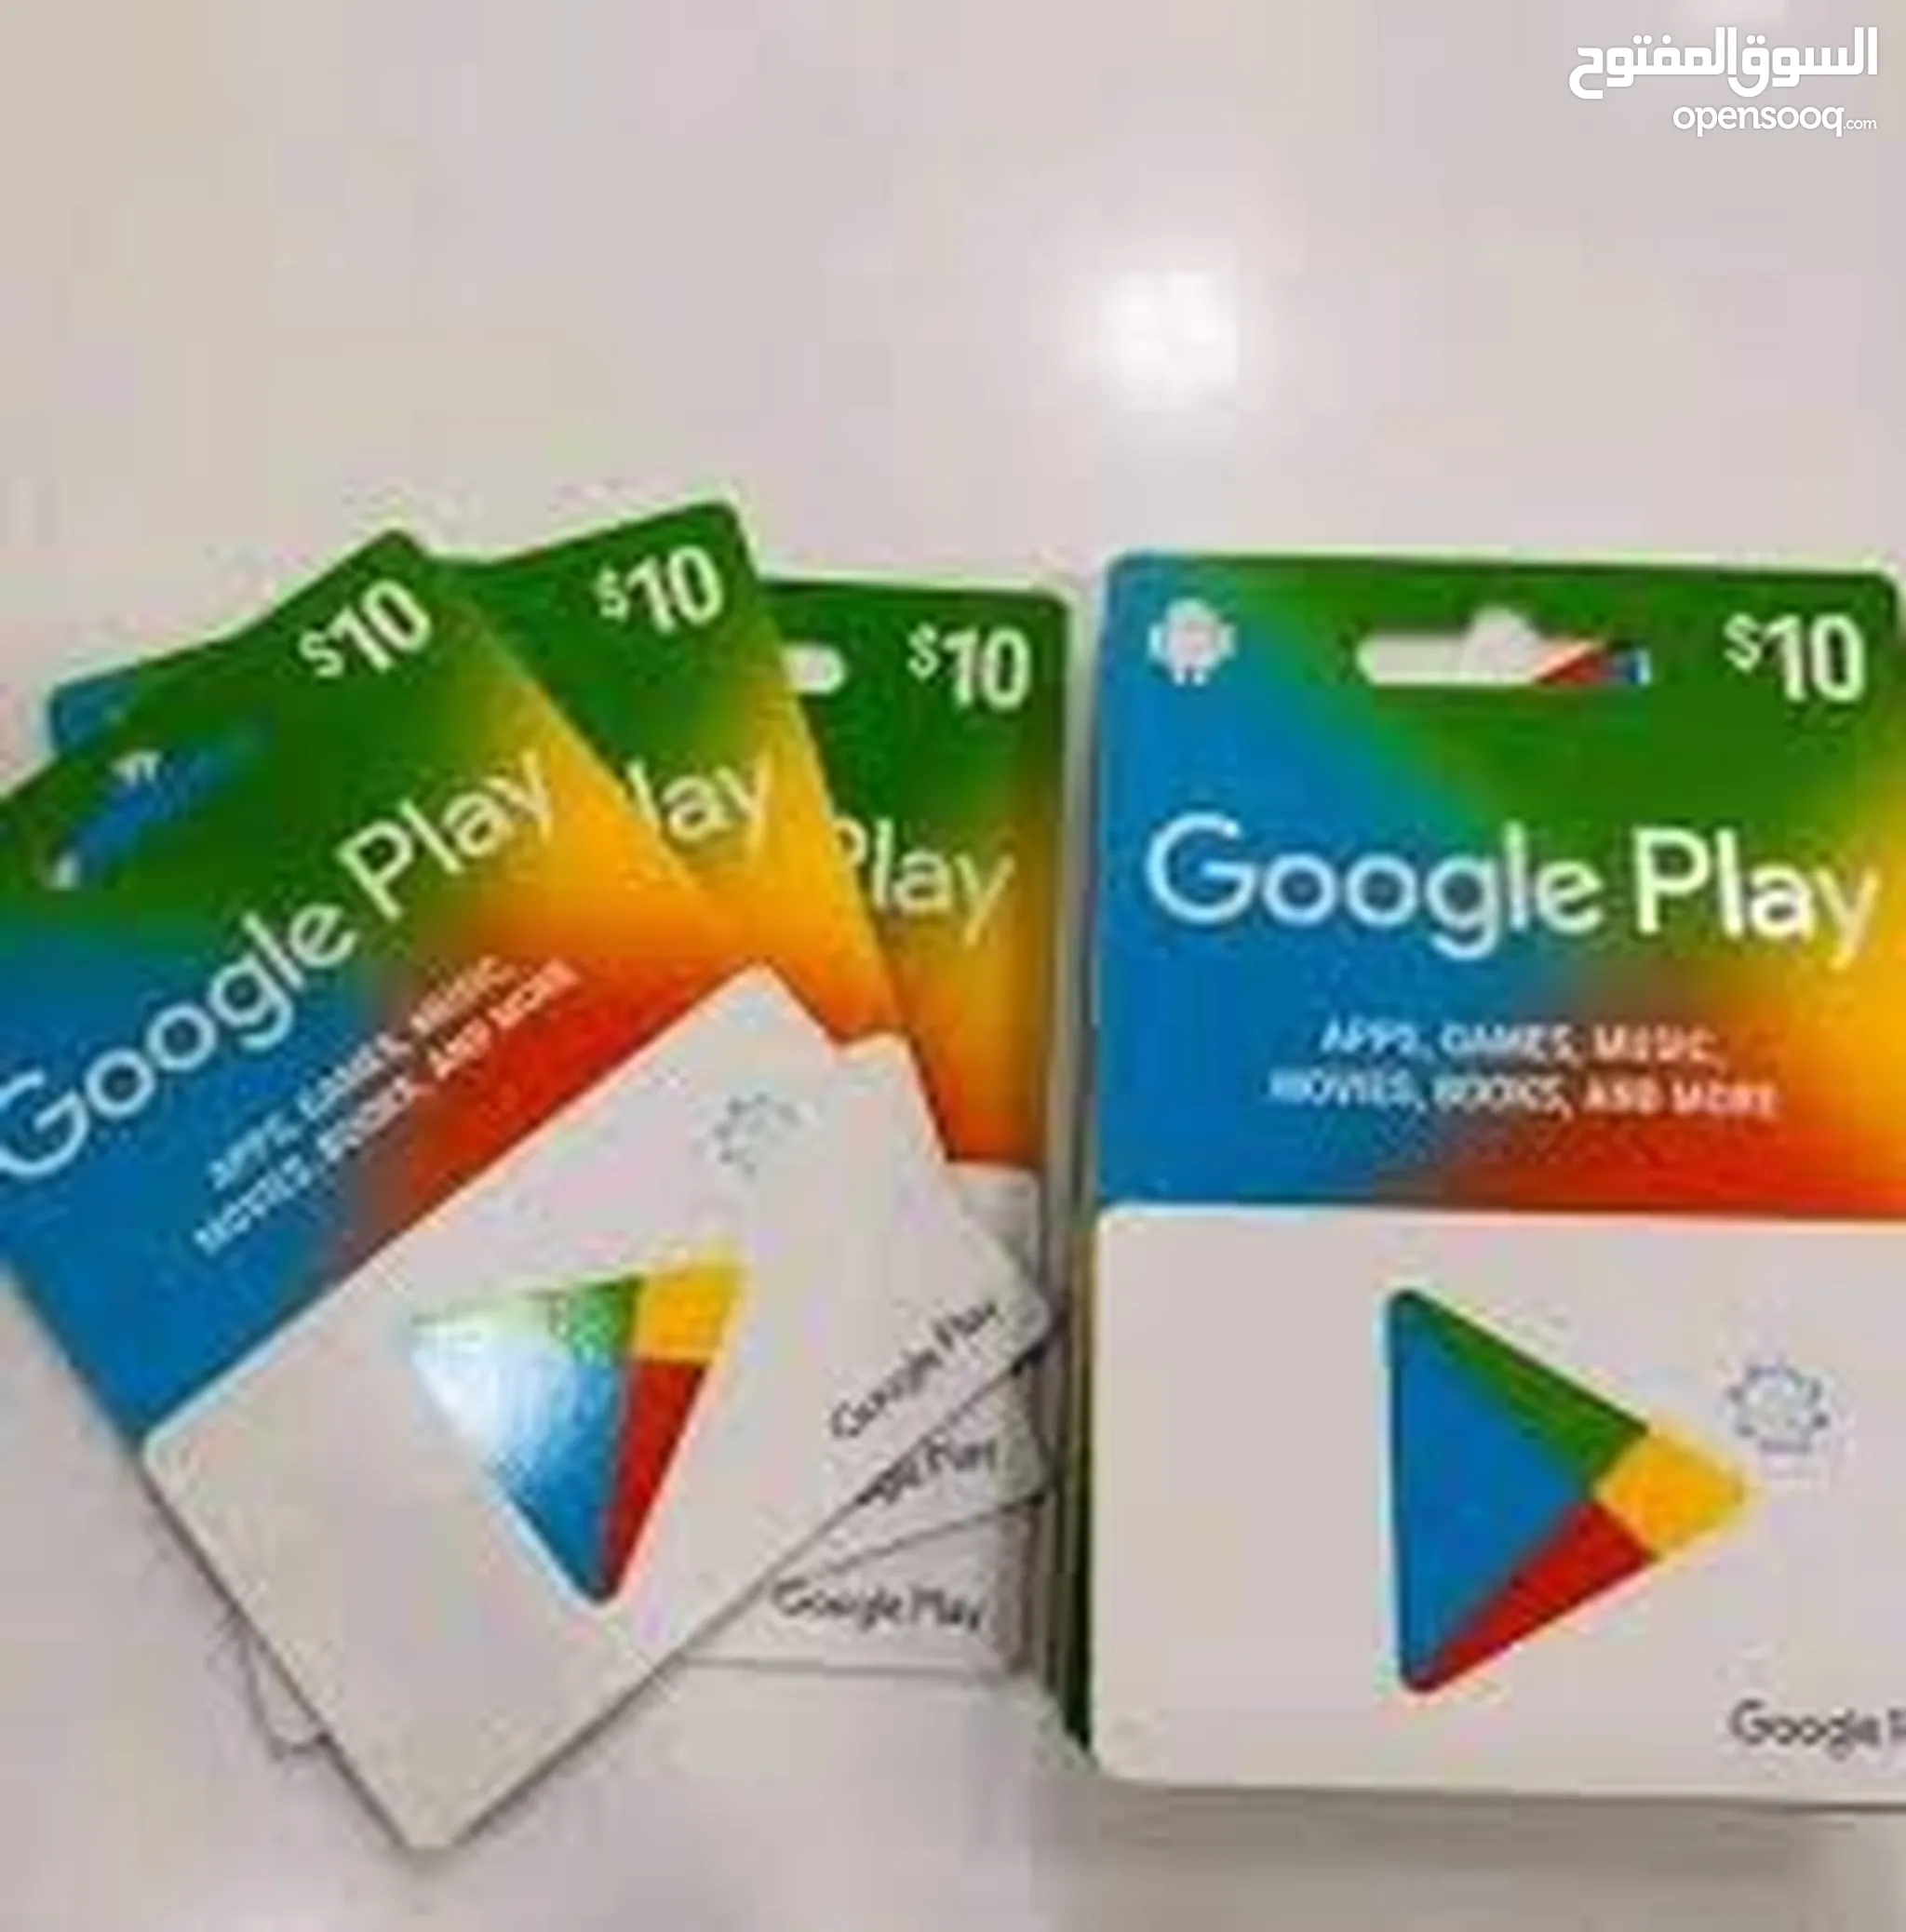 بطاقات جوجل بلاي للبيع في ليبيا : شحن بطاقات : افضل سعر